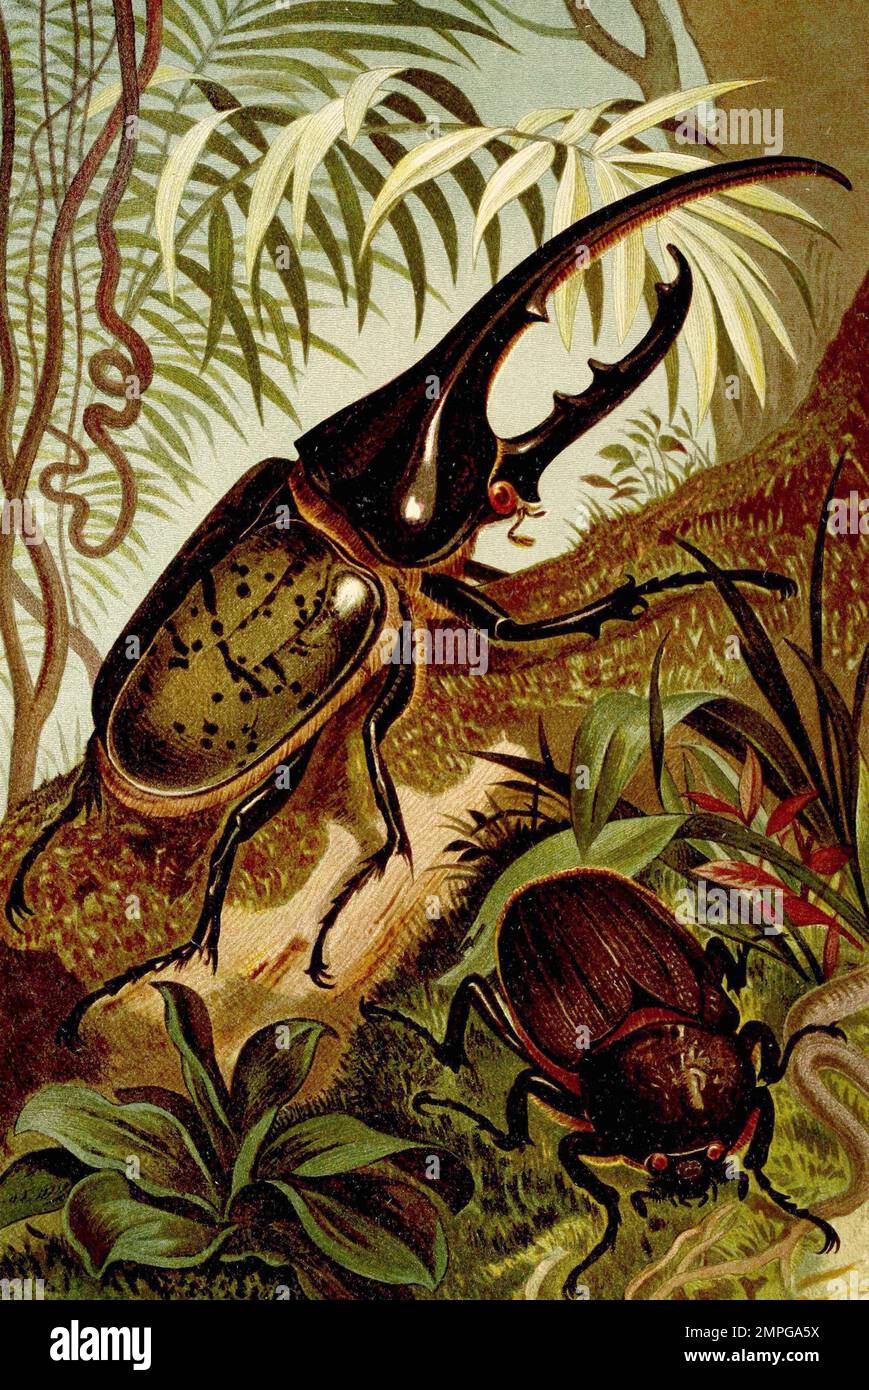 Insekten, Herkuleskäfer, Dynastes hercules ist eine Art aus der Familie der Blatthornkäfer, Historisch, digital restaurierte Reproduktion von einer Vorlage aus dem 19. Jahrhundert Stock Photo